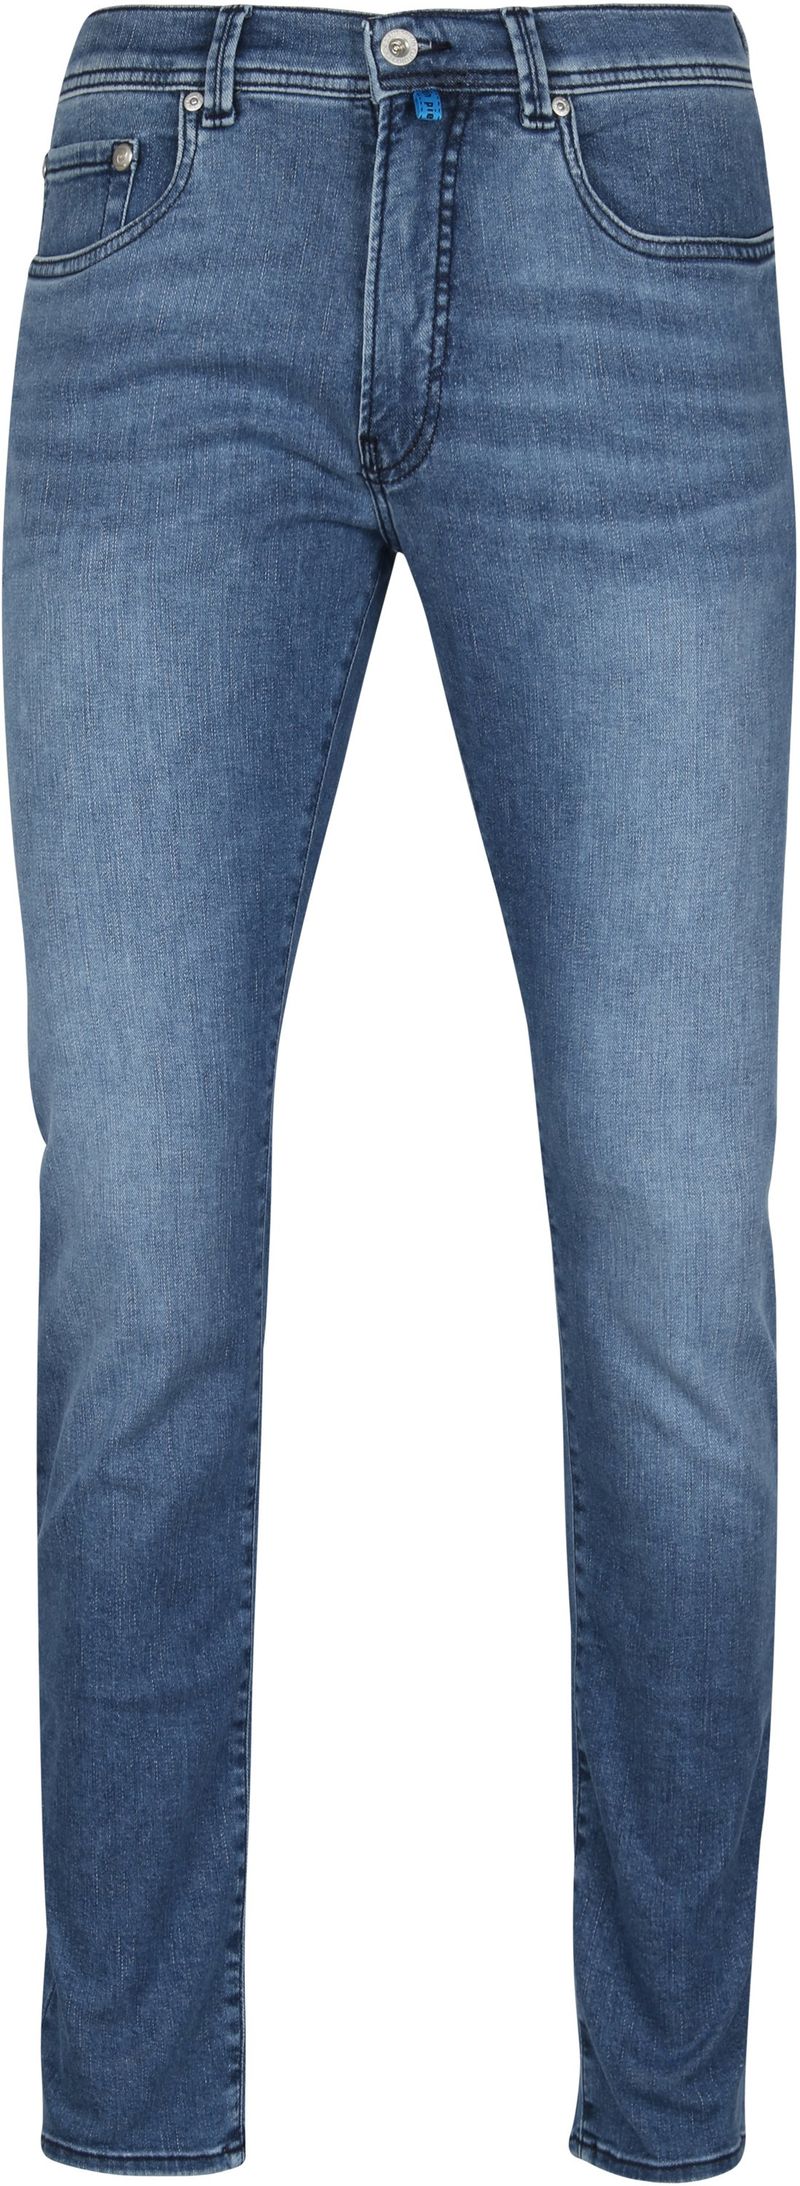 Pierre Cardin Jeans Lyon Tapered Future Flex Blau - Größe W 32 - L 36 günstig online kaufen